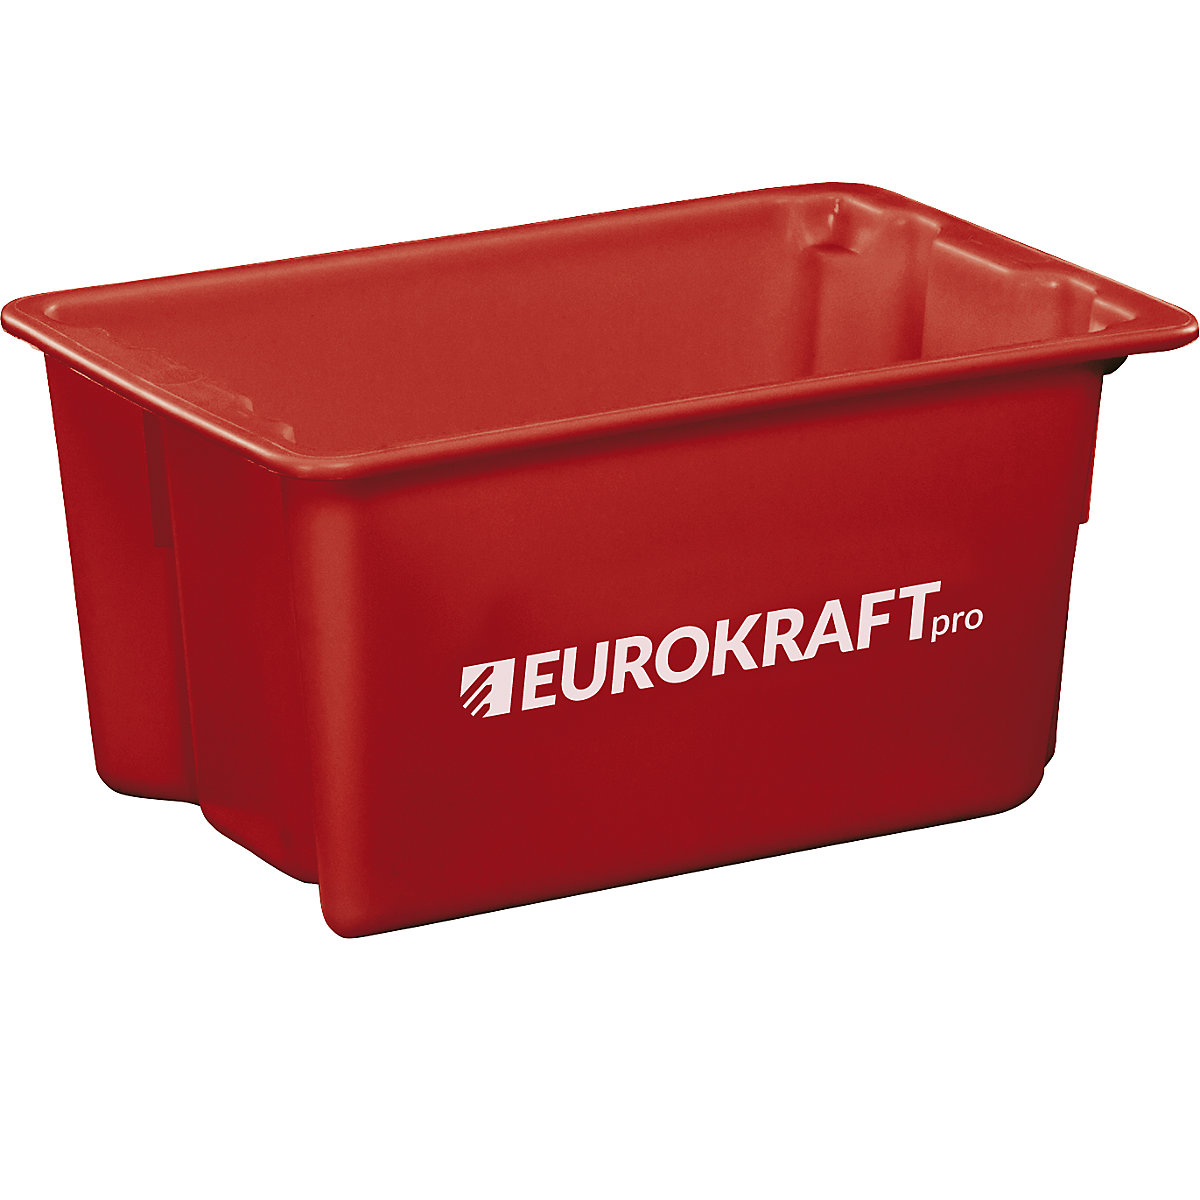 Drehstapelbehälter aus lebensmittelechtem Polypropylen eurokraft pro, Inhalt 50 Liter, VE 3 Stk, Wände und Boden geschlossen, rot